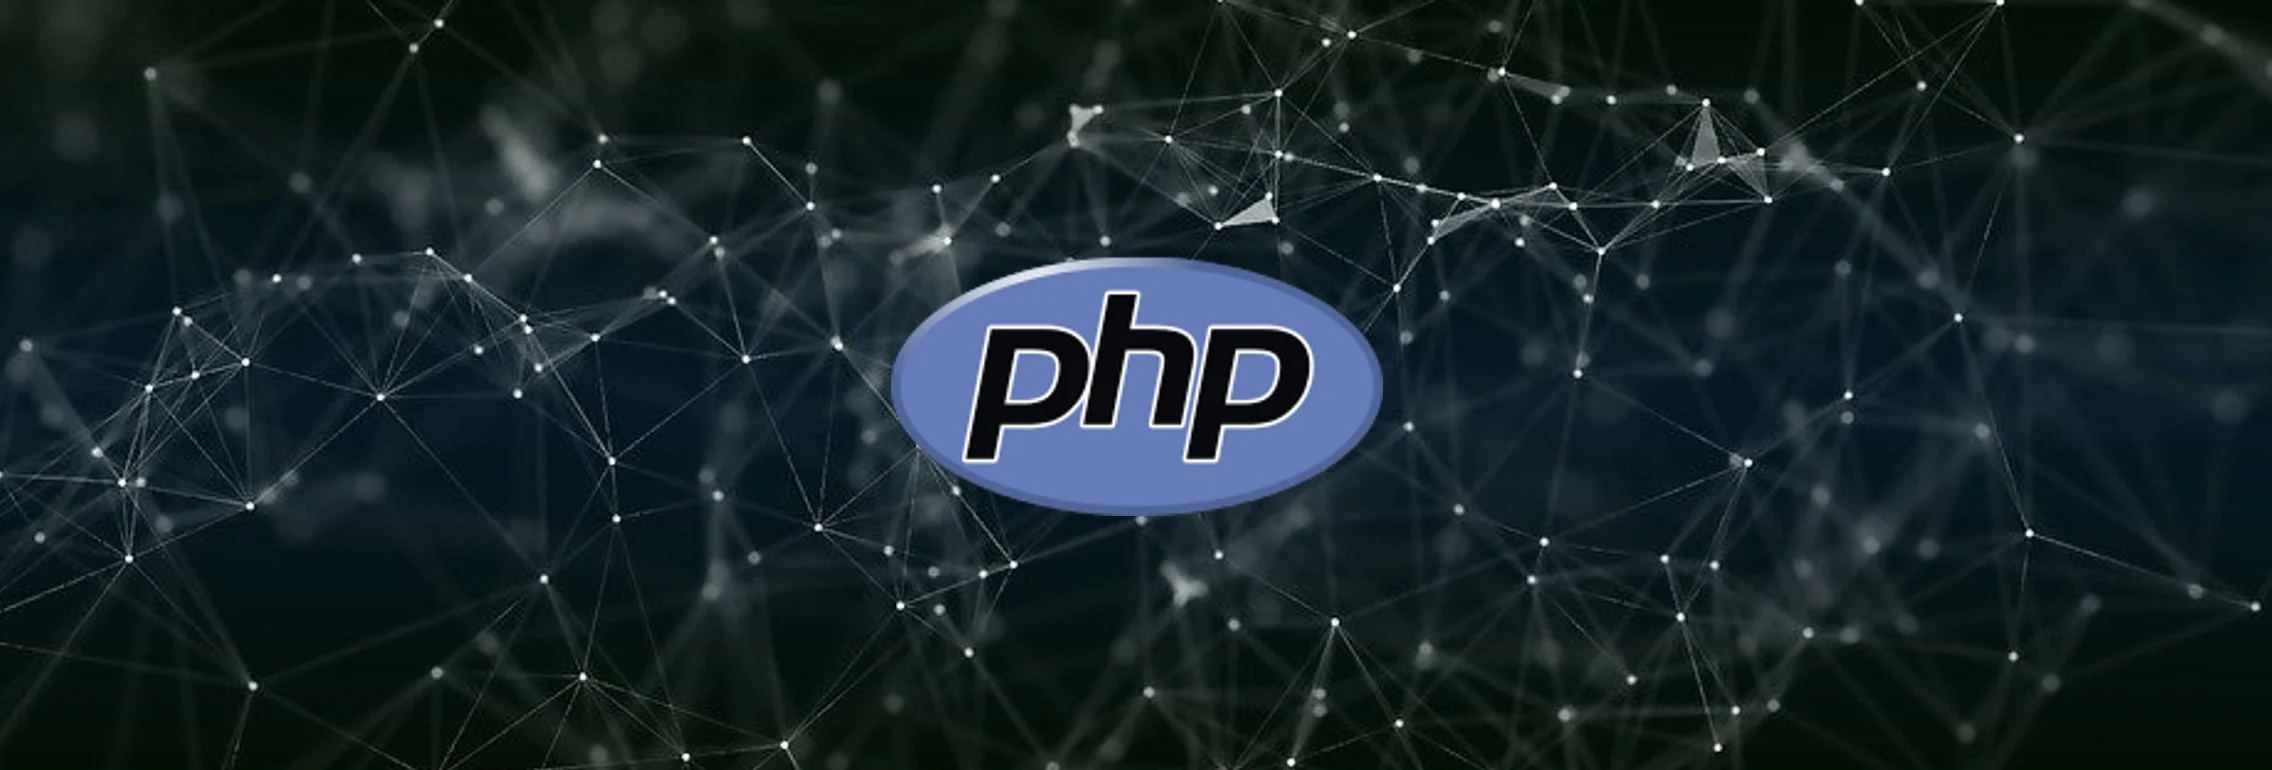 PHP的Git服务器被黑客攻击 源码库被添加后门